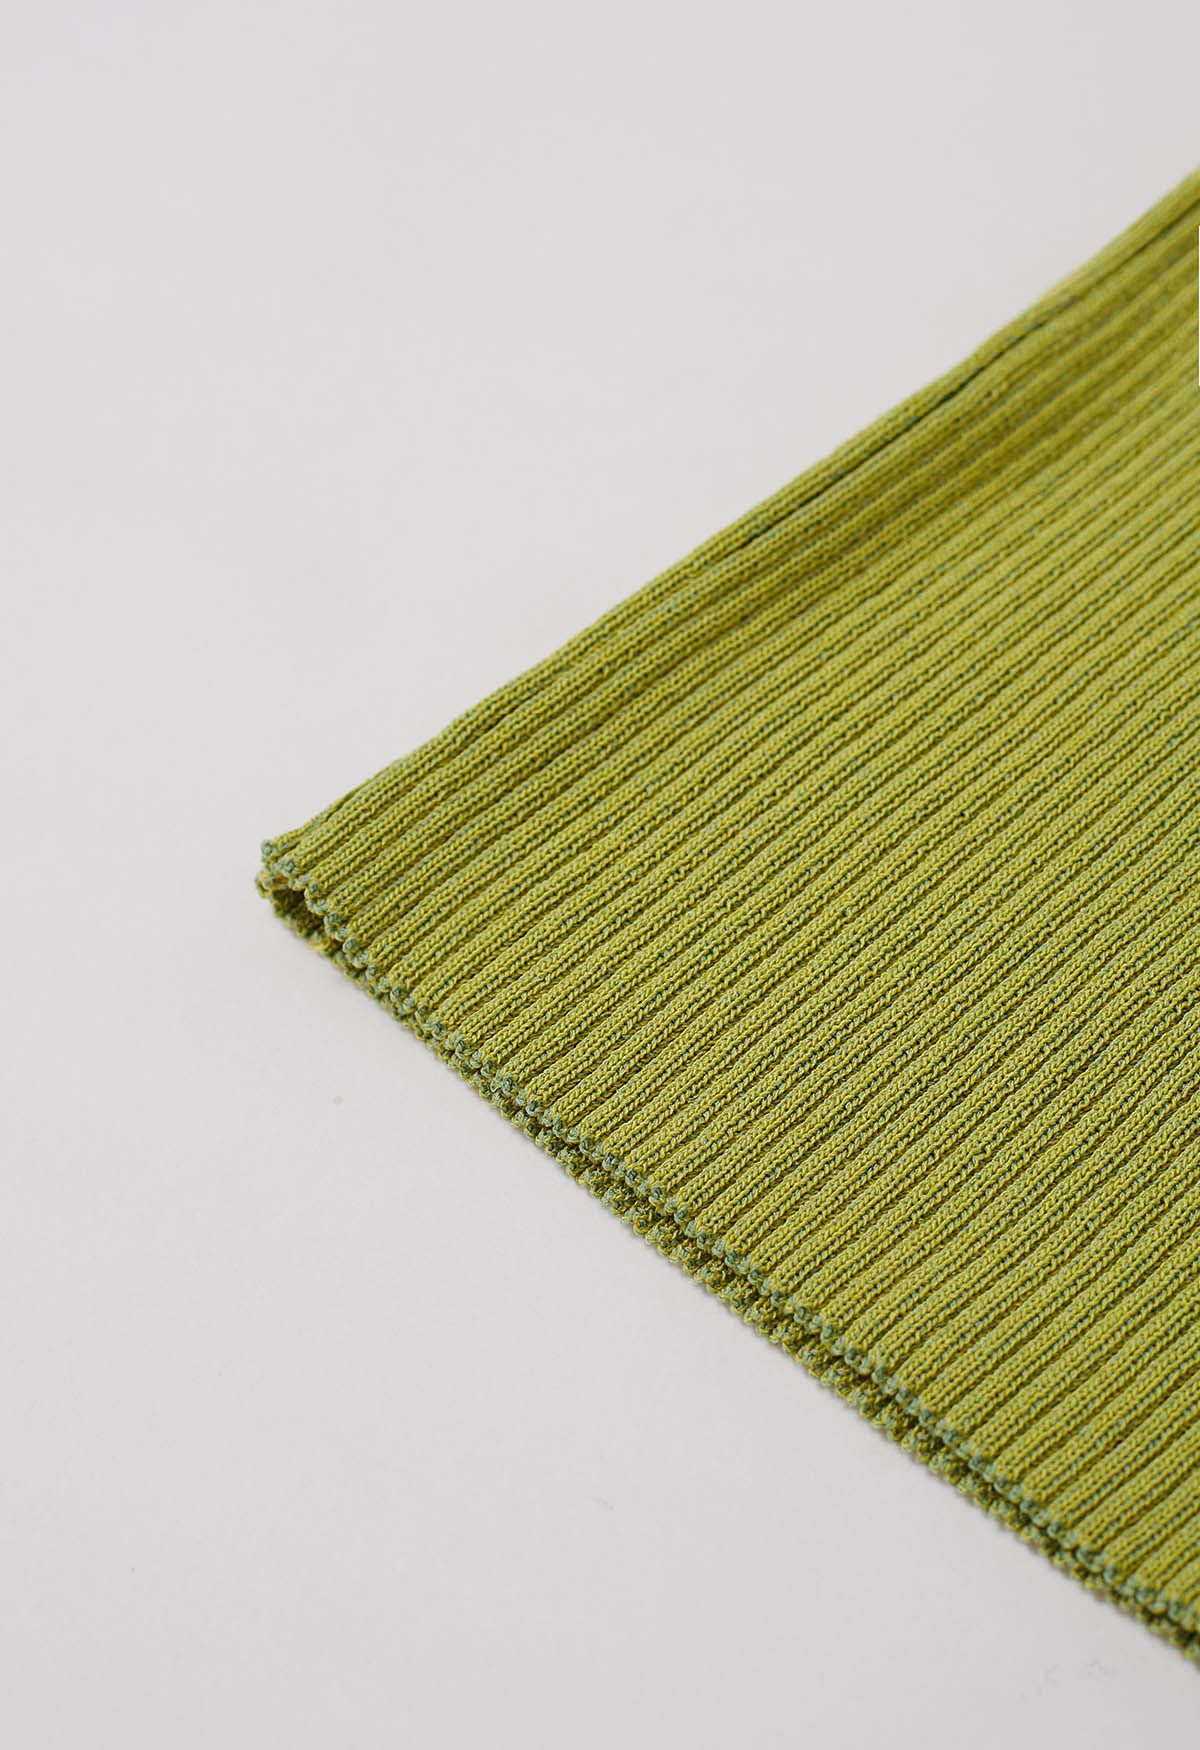 Débardeur en tricot texturé à rayures en vert